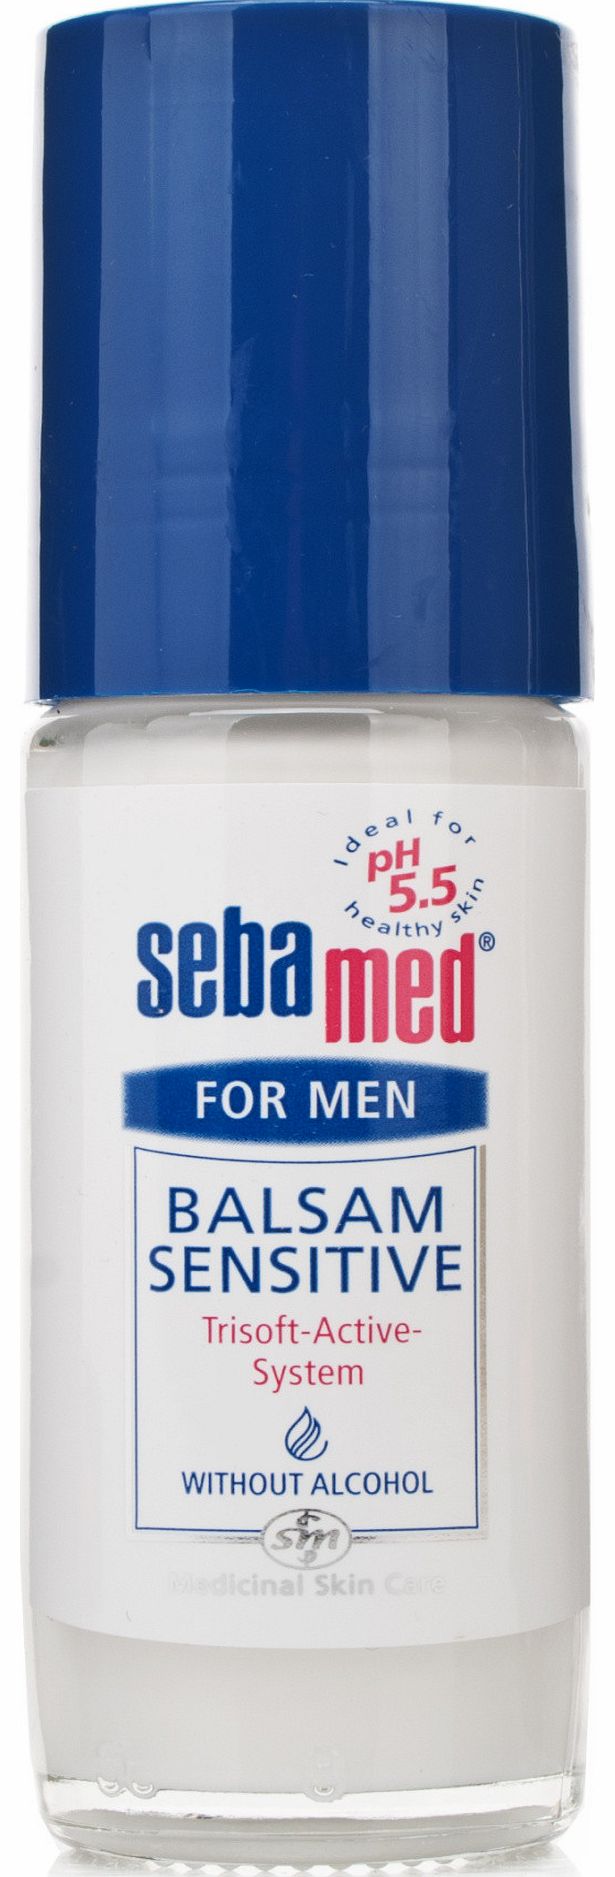 Sensitive Balsam Deodorant Roll-On For Men